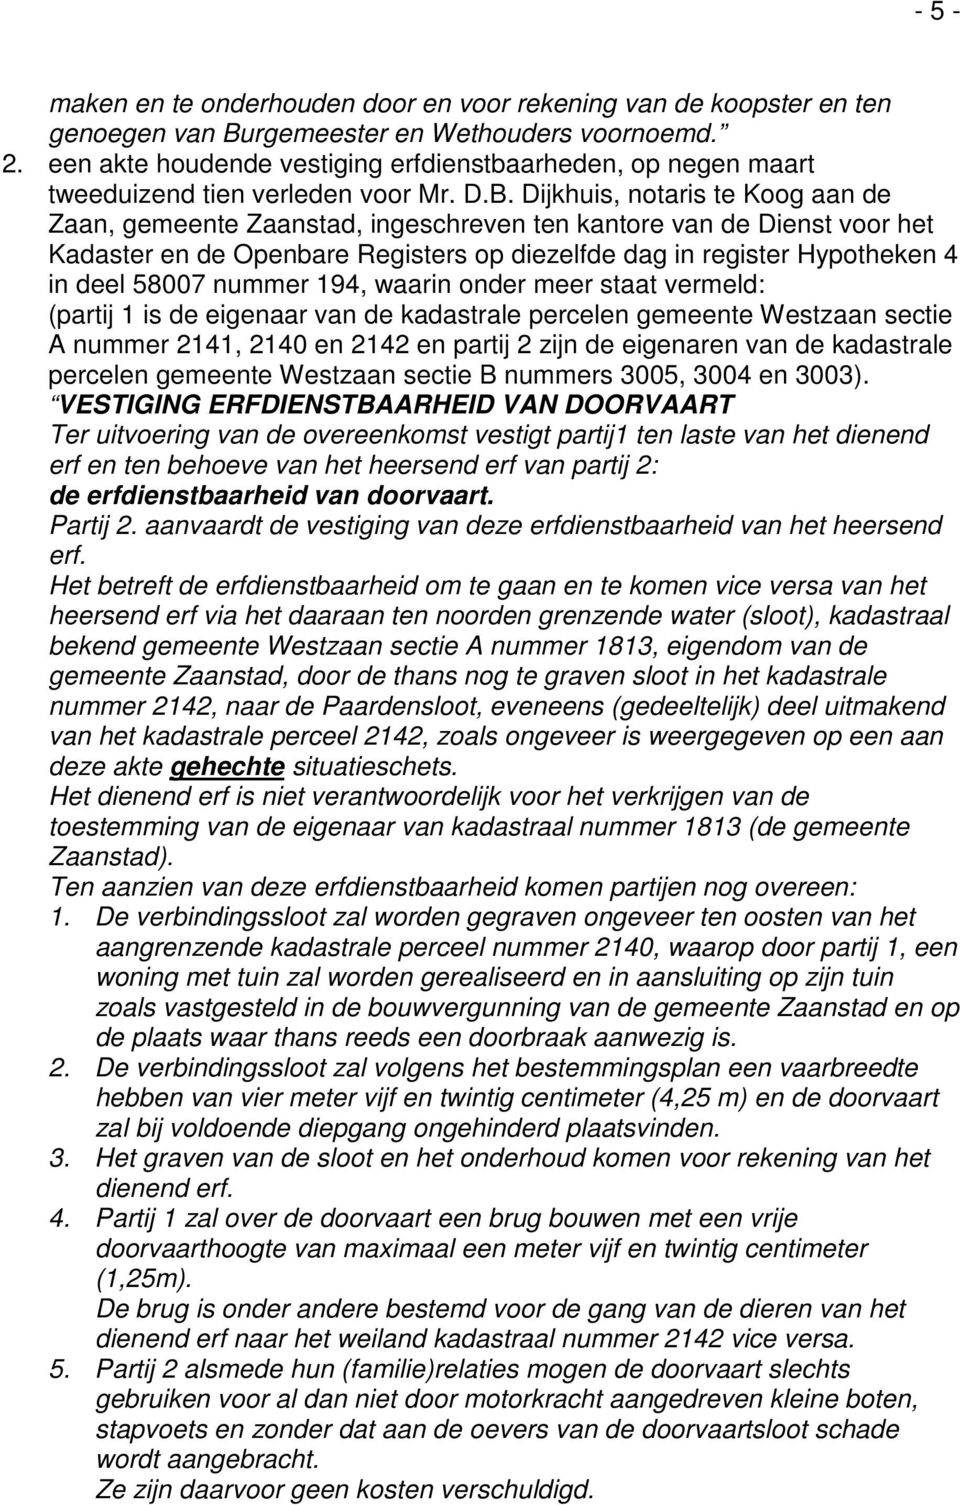 Dijkhuis, notaris te Koog aan de Zaan, gemeente Zaanstad, ingeschreven ten kantore van de Dienst voor het Kadaster en de Openbare Registers op diezelfde dag in register Hypotheken 4 in deel 58007